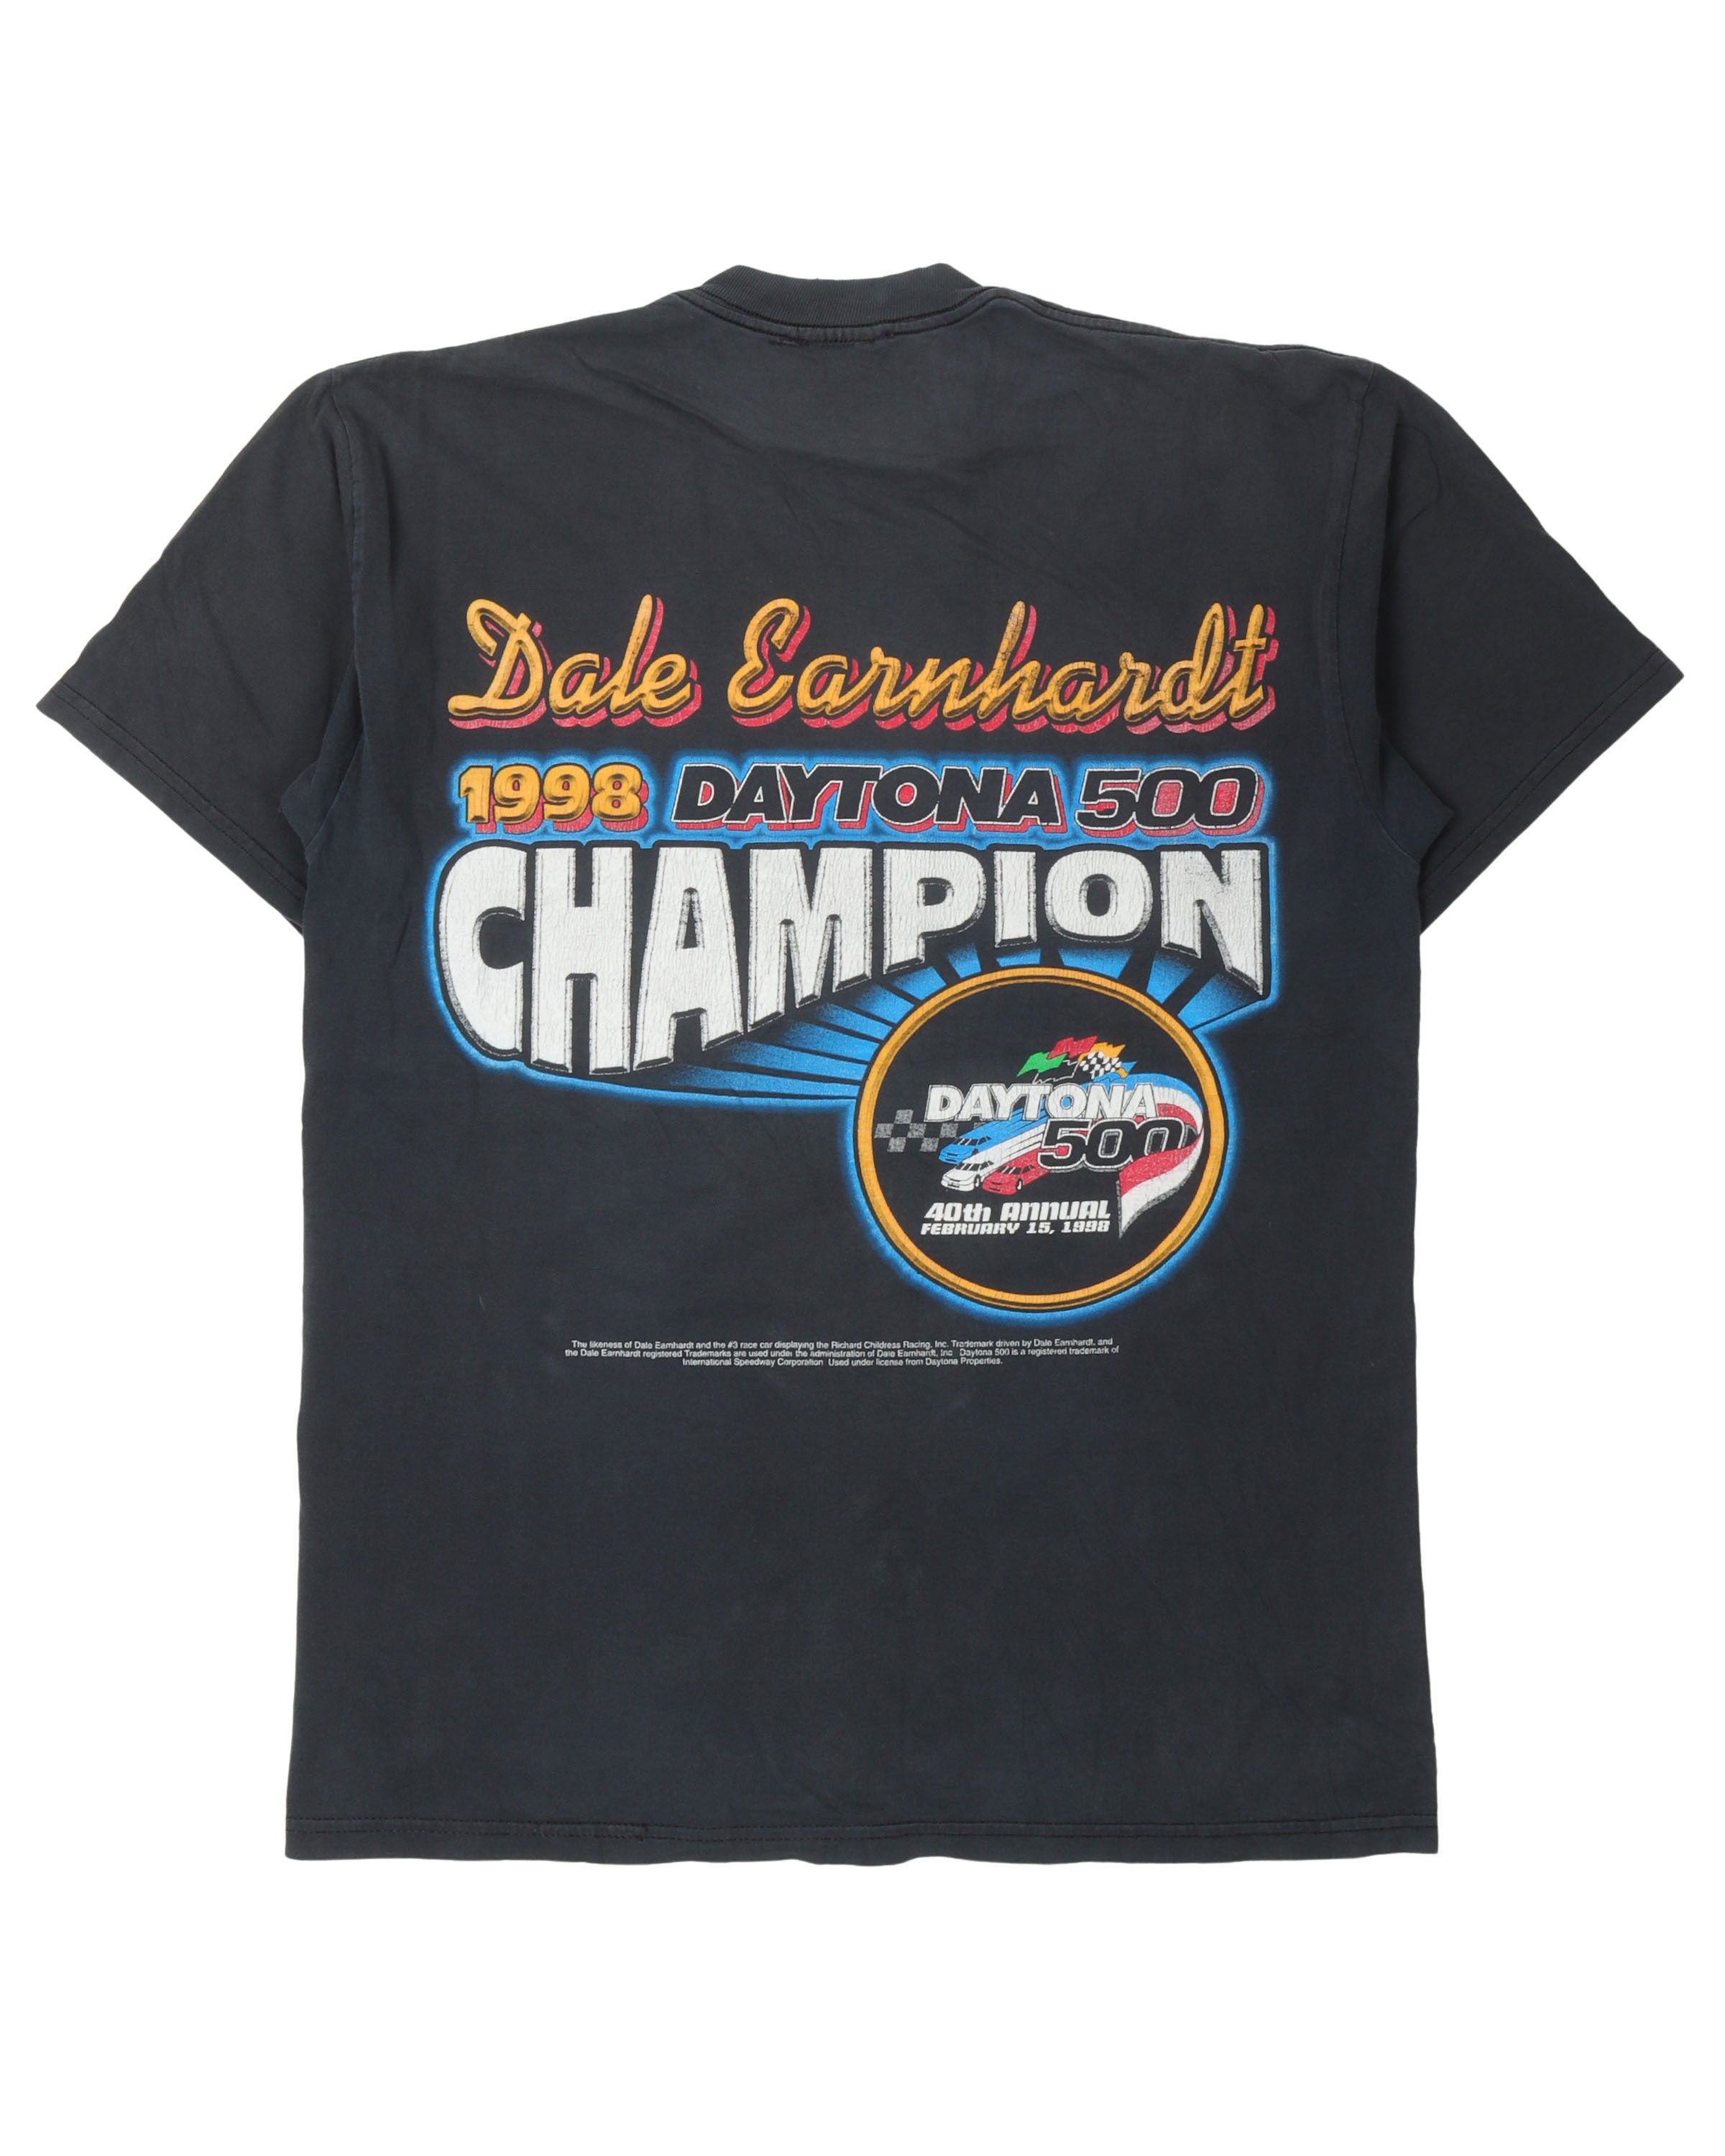 1998 Dayton 500 Championship T-Shirt